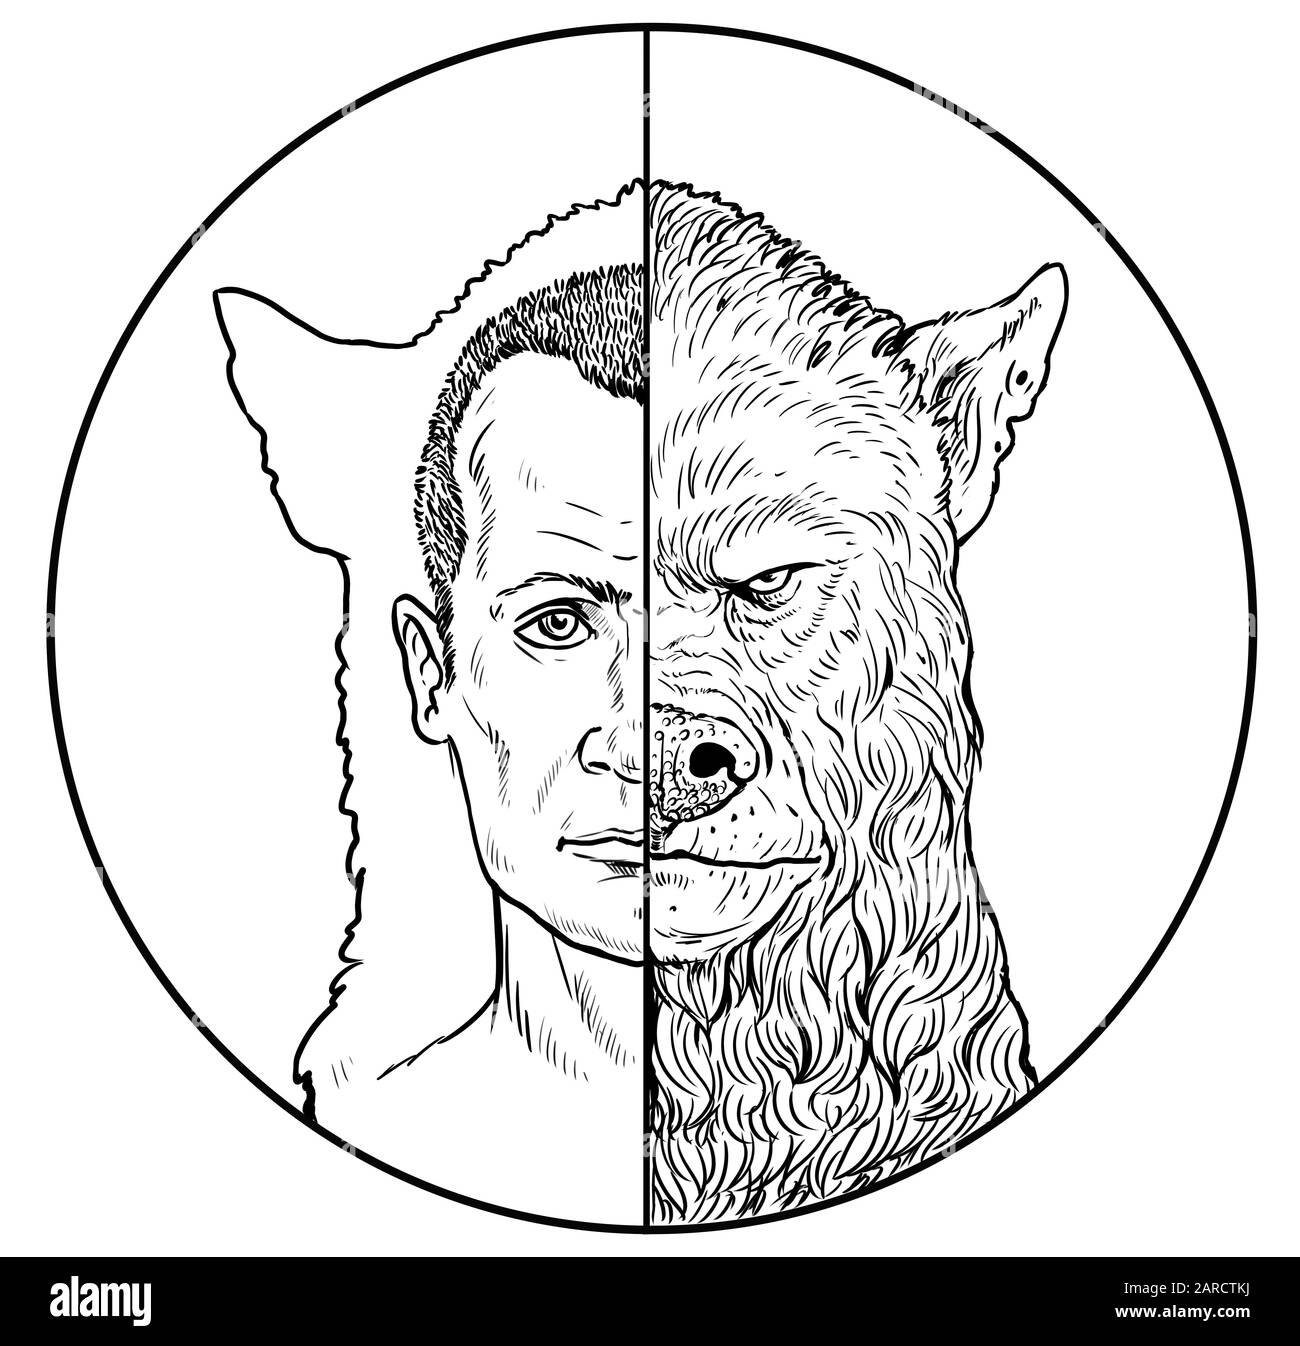 Der Mensch verwandelt sich in einen Werwolf. Zwei Seiten der Seele. Darstellung der Monster-Silhouette. Stockfoto